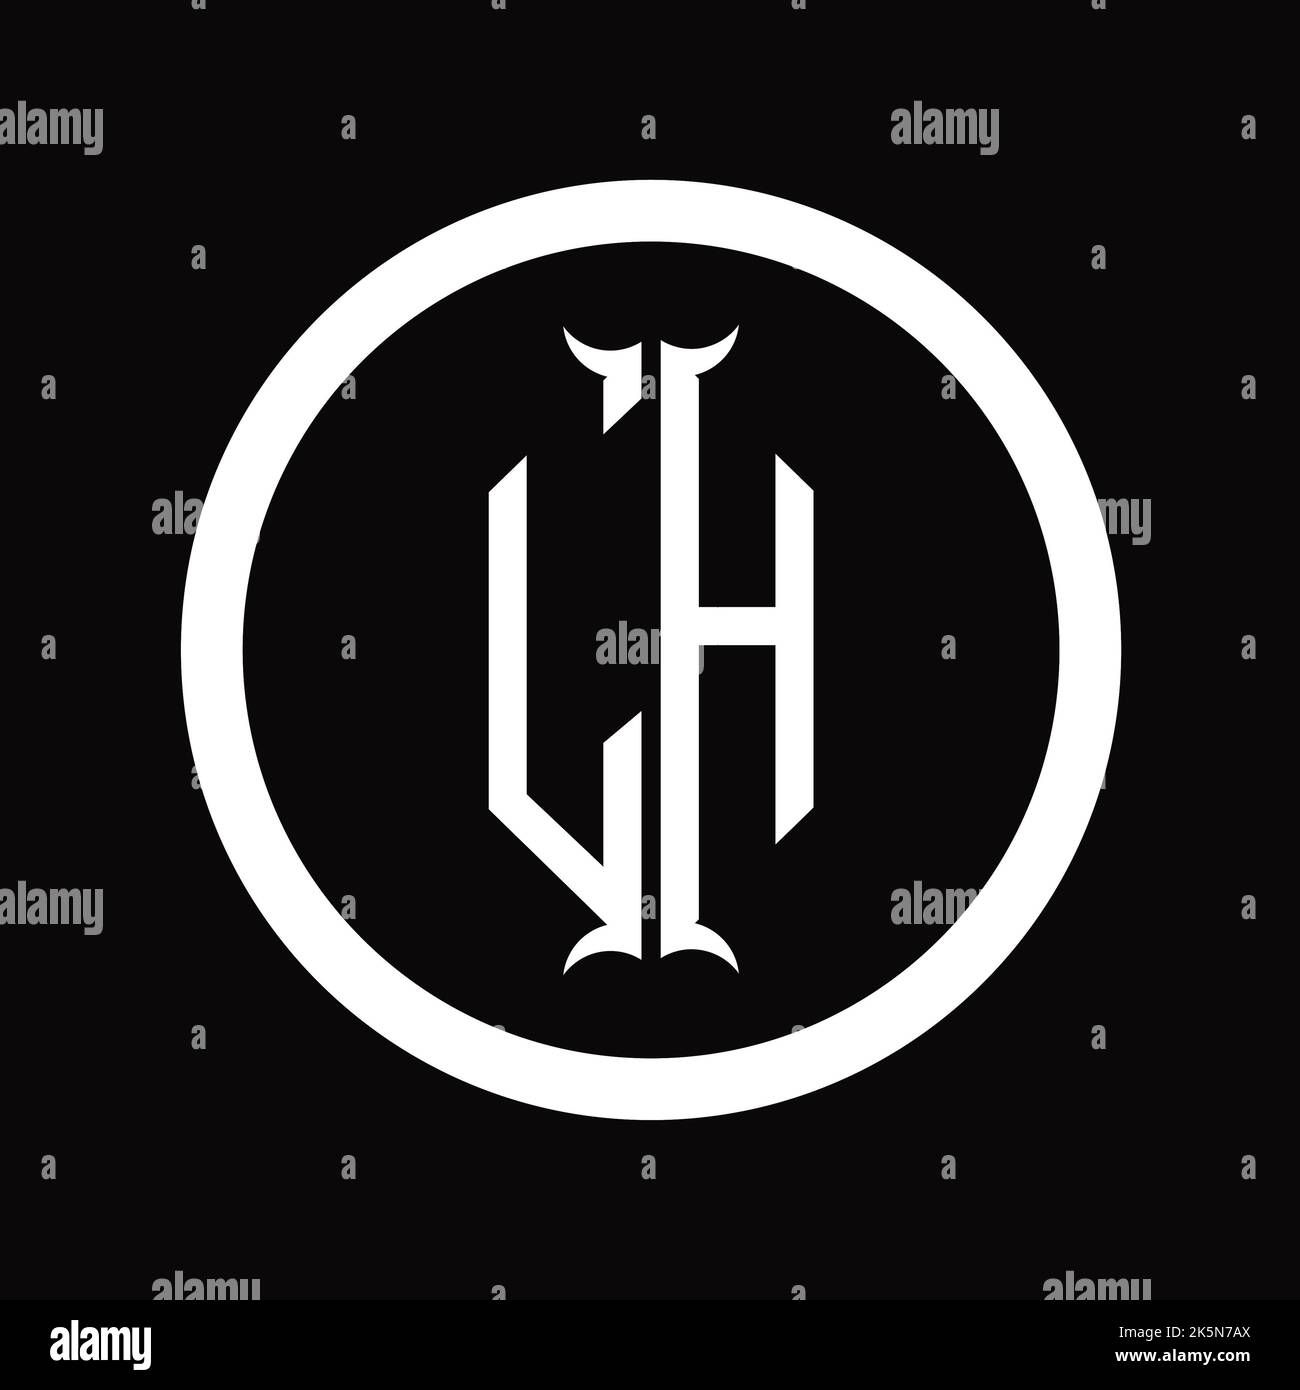 HL Logo monogram letter with hexagon horn shape design template Stock Photo